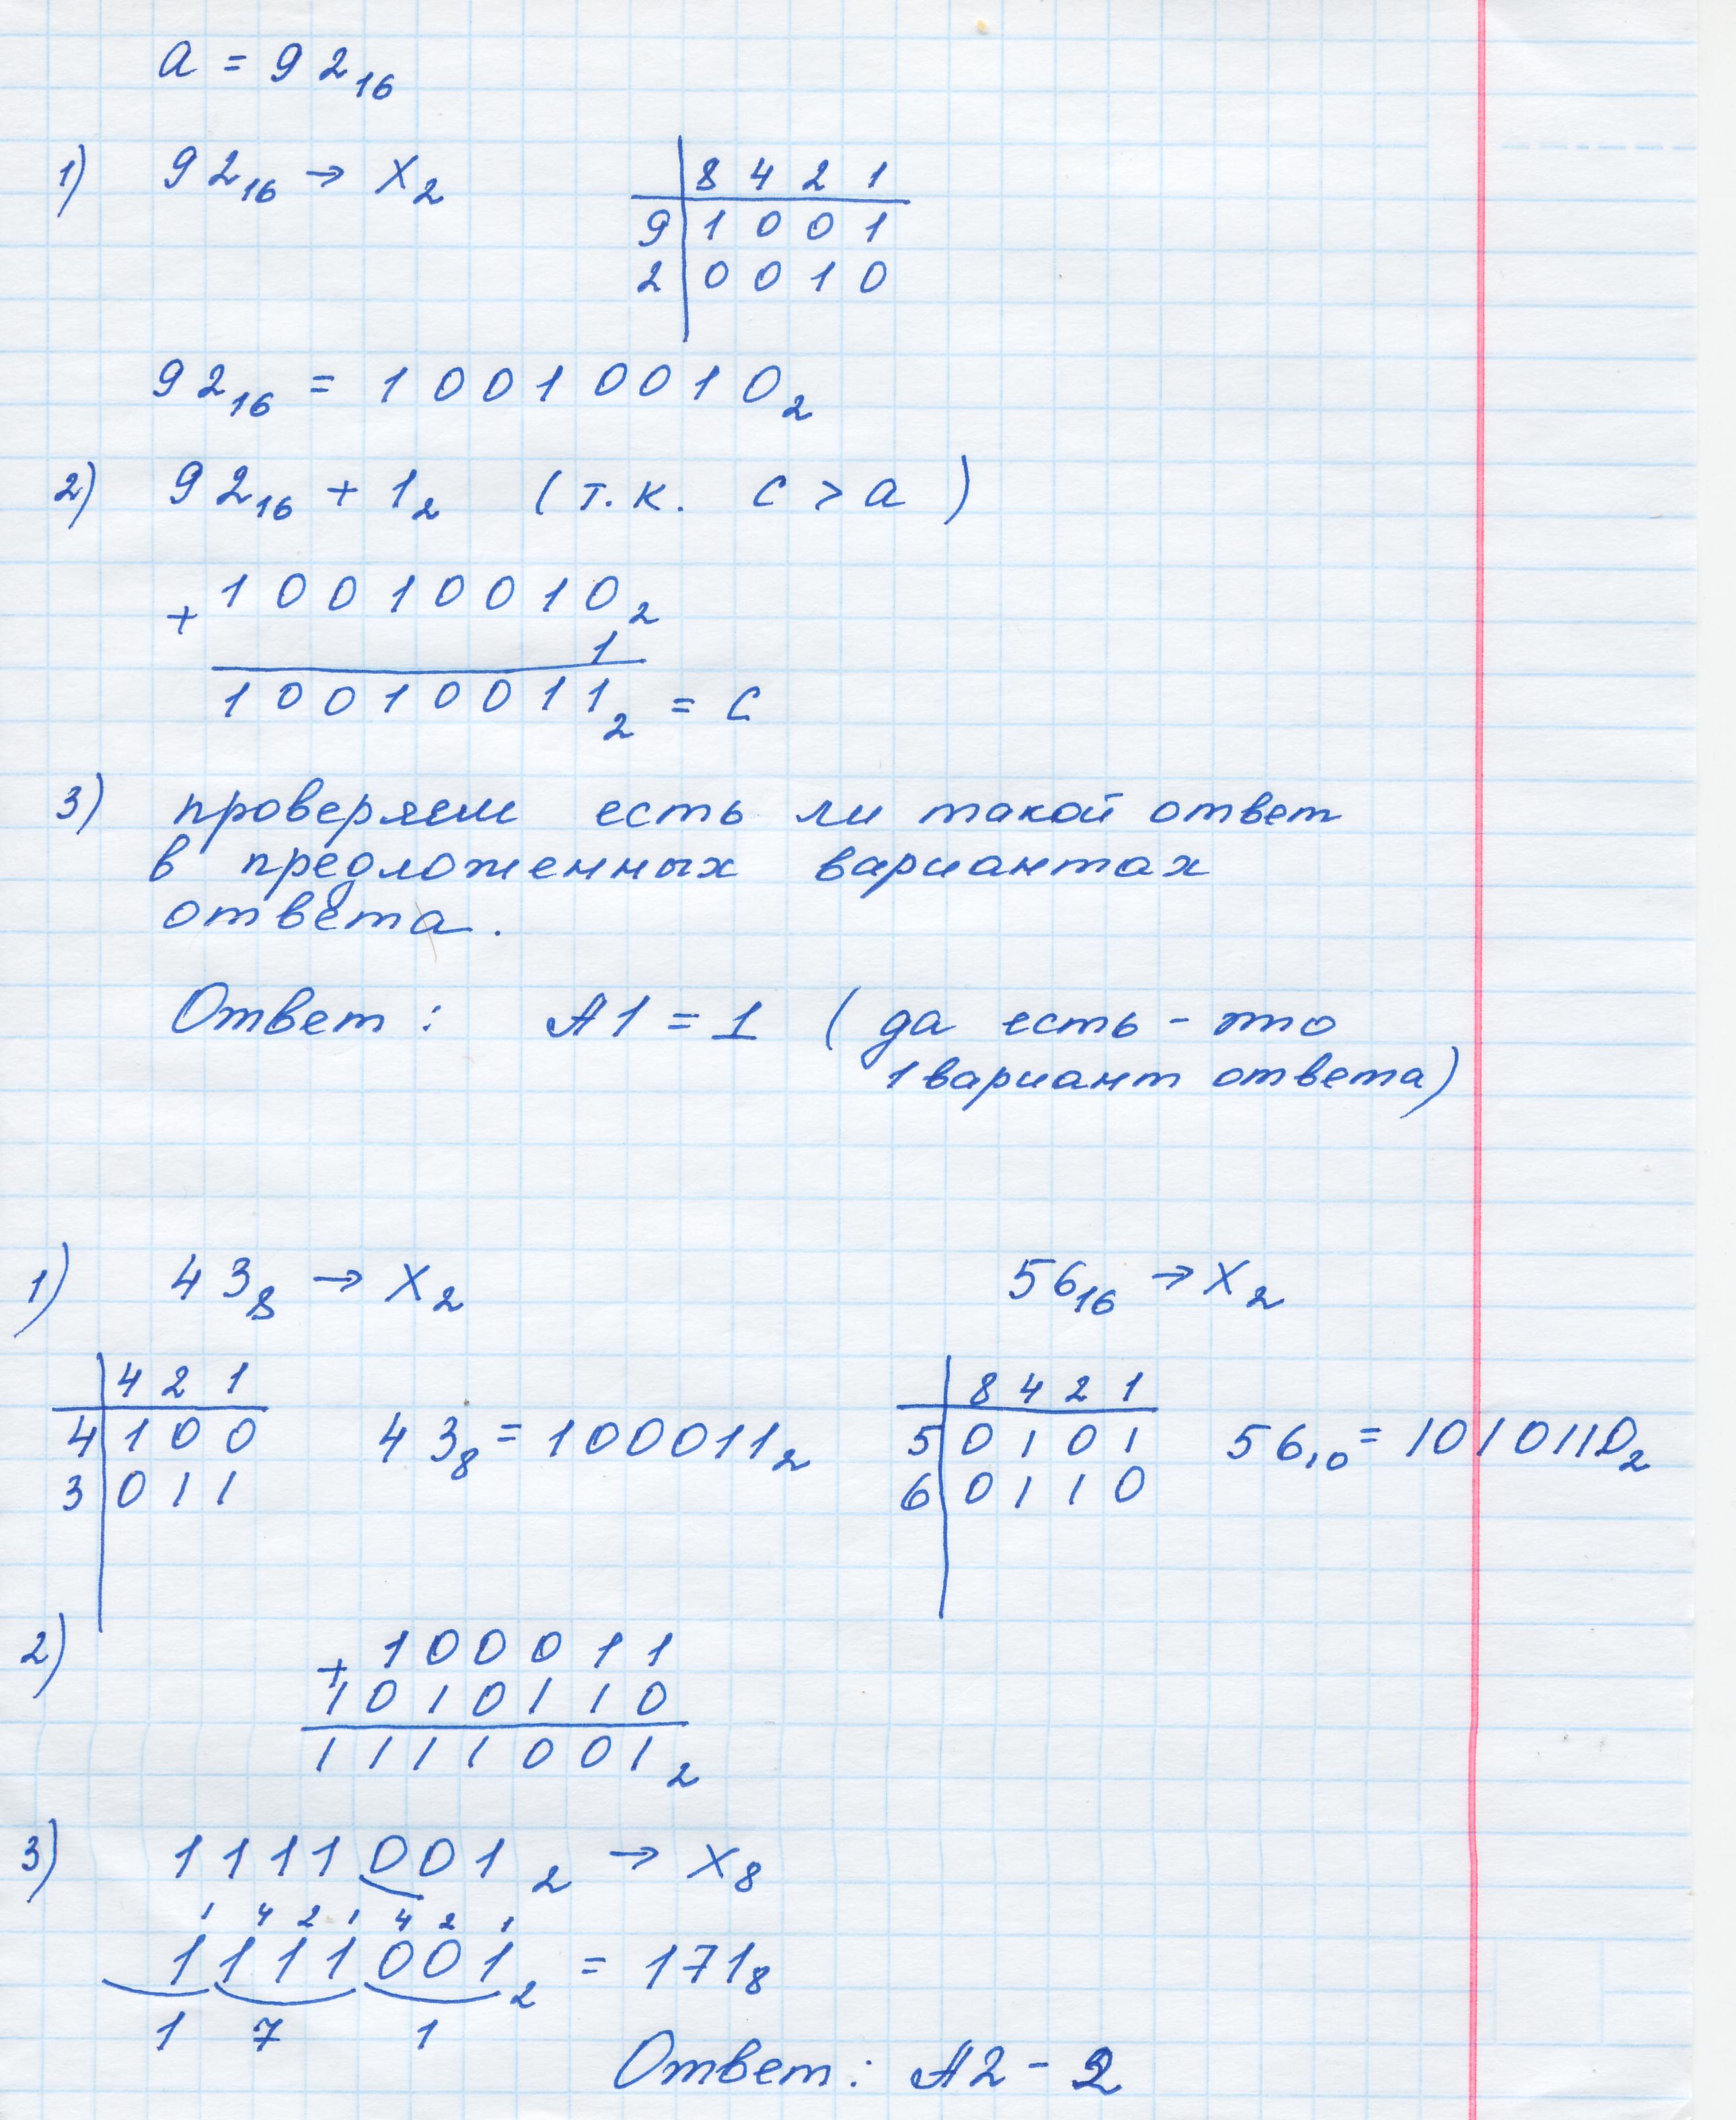 Урок информатики на тему Системы счисления для решения задач, включаемых в материалы ЕГЭ.